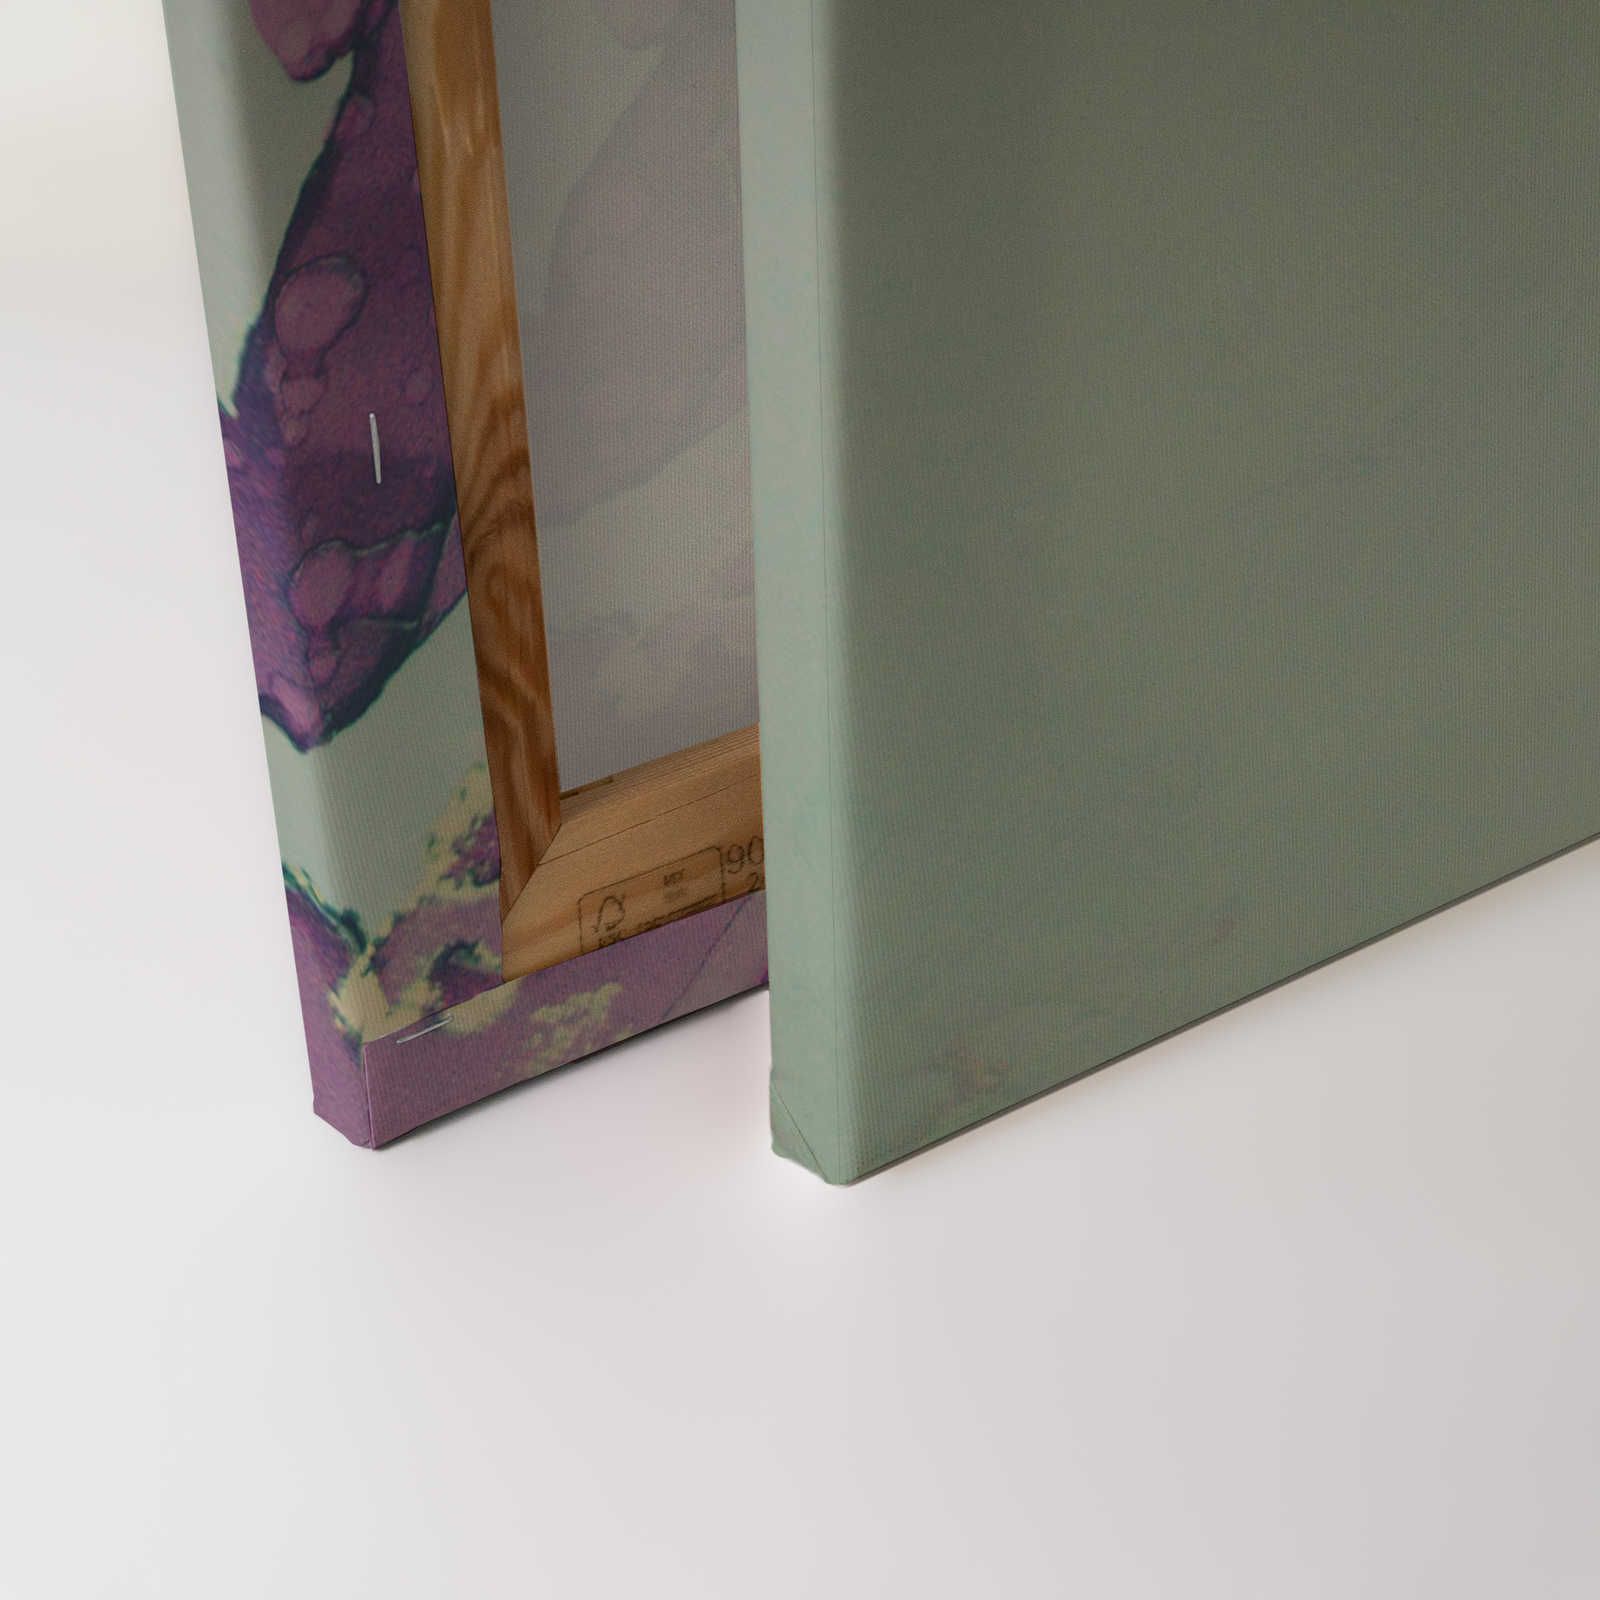             Lienzo de diseño acrílico Rostro de mujer en turquesa y morado - 0,90 m x 0,60 m
        